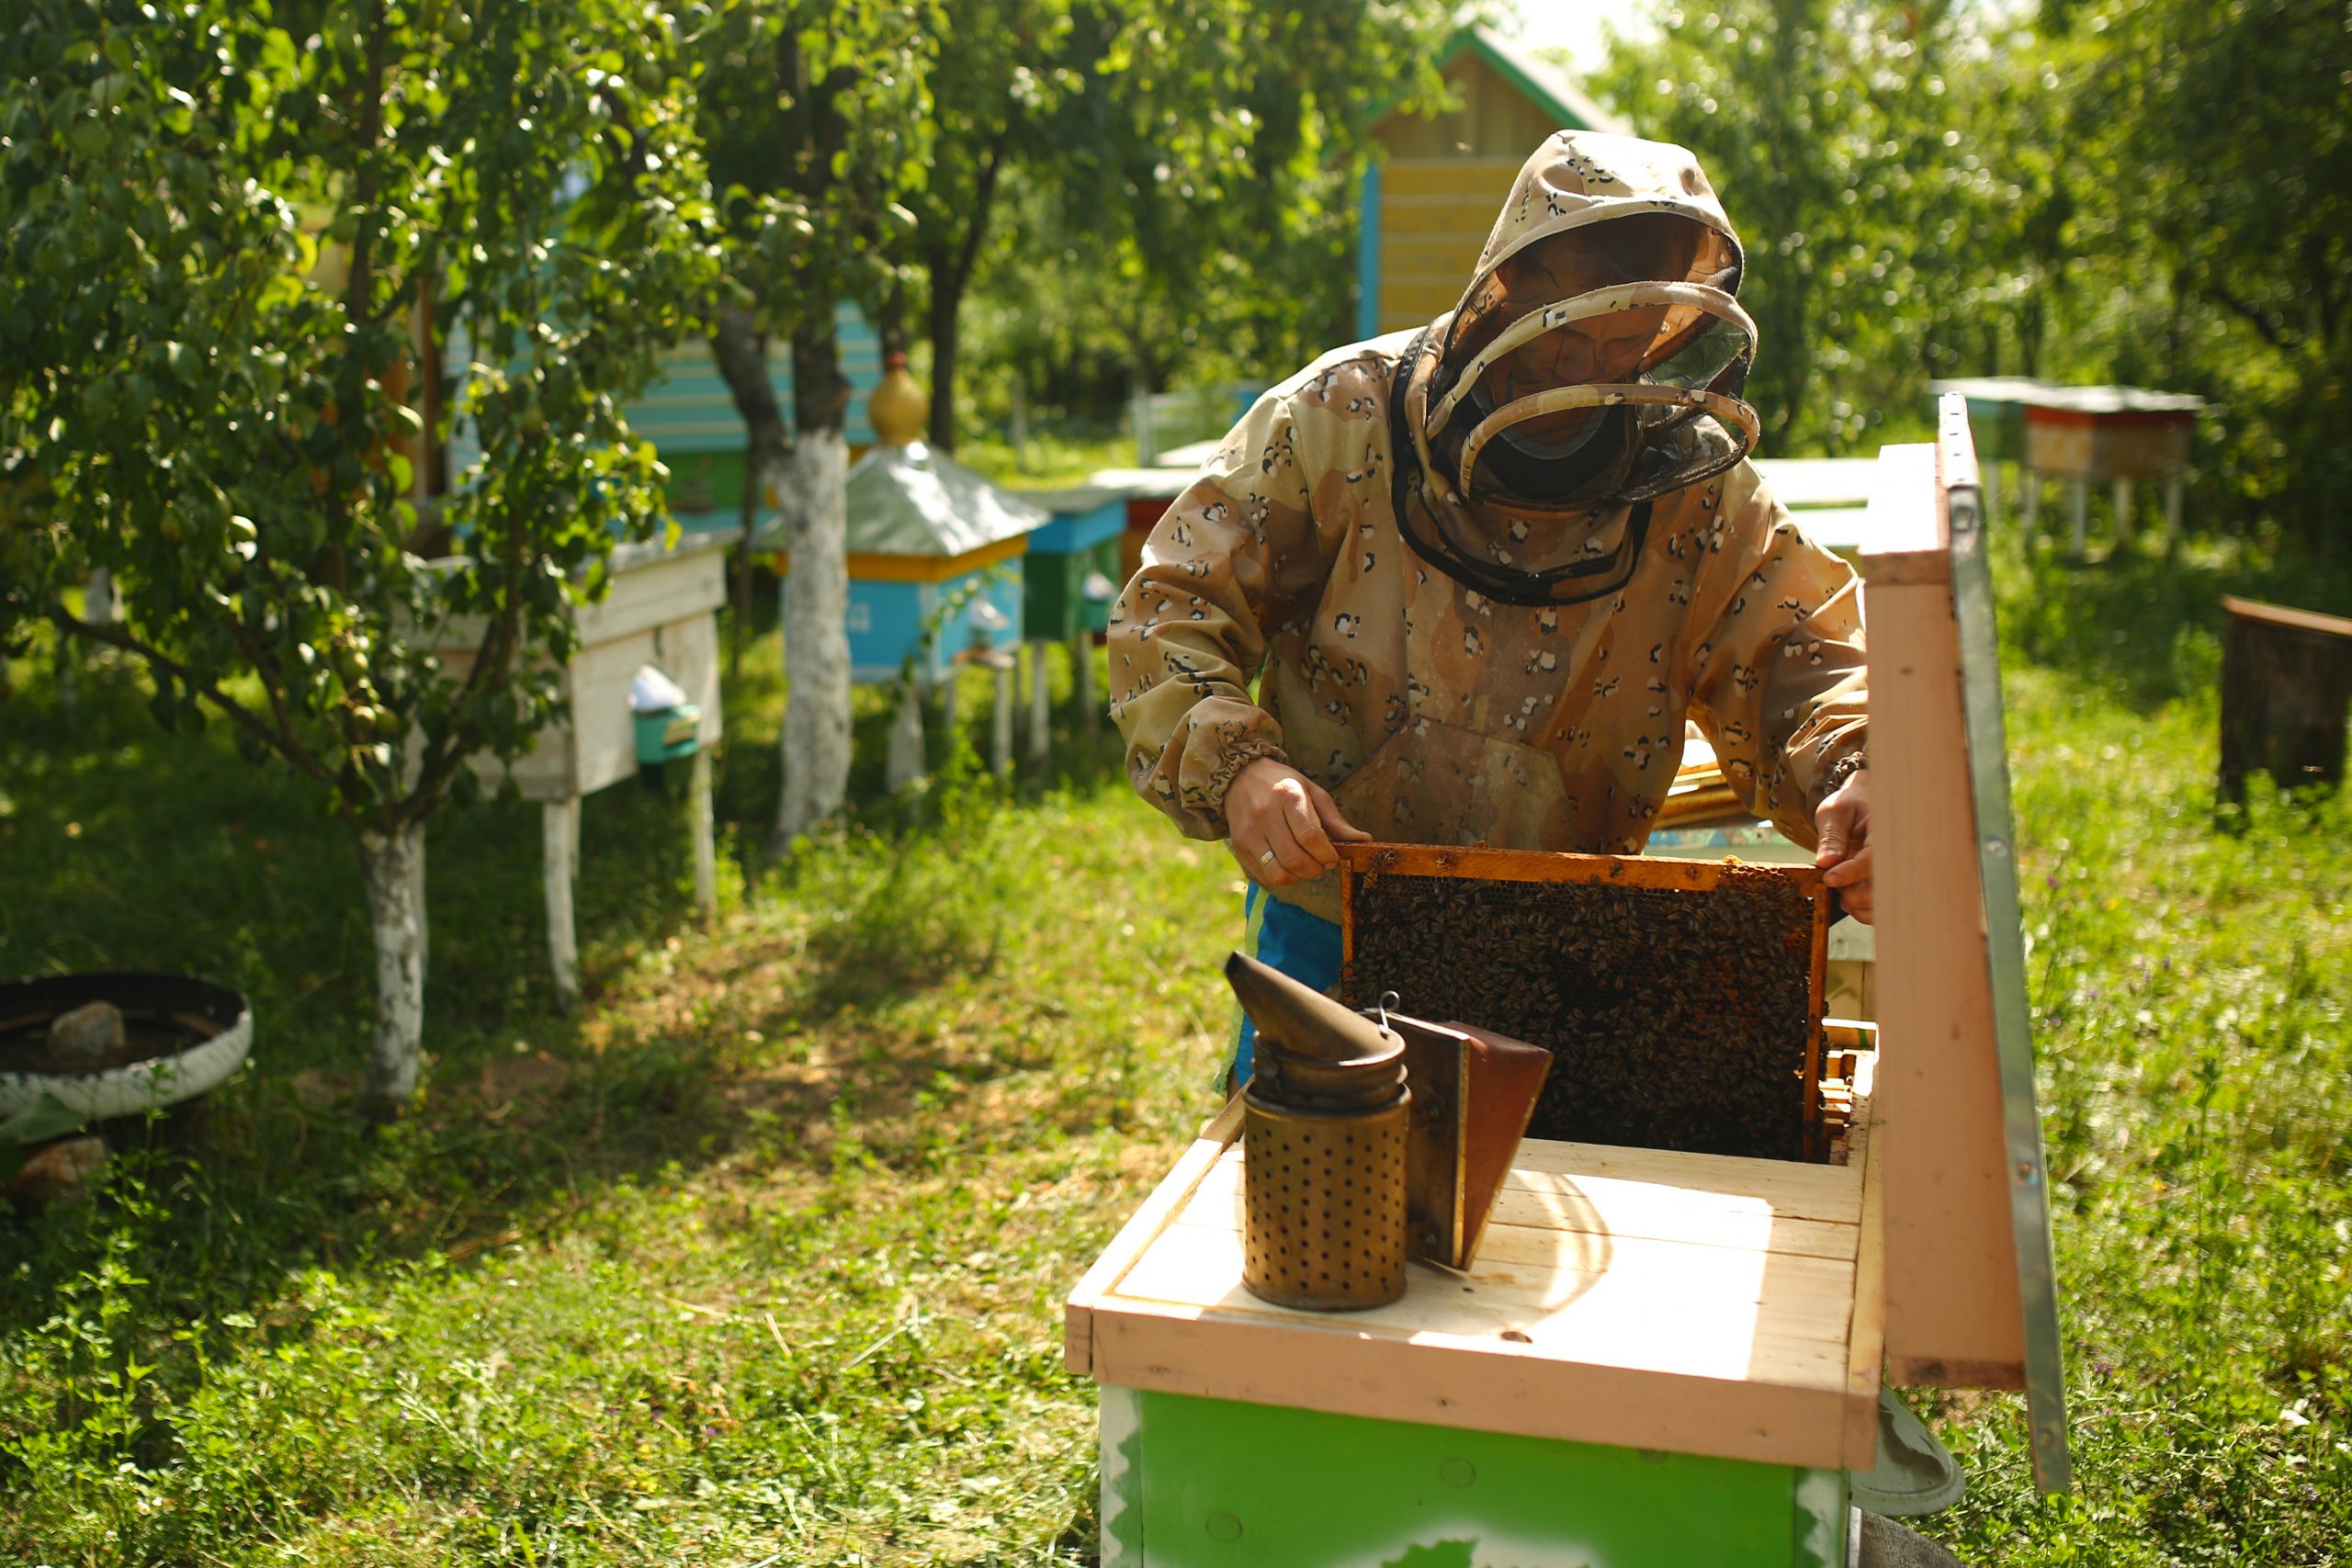 Backyard Beekeepers: Key to the Honeybee Crisis?